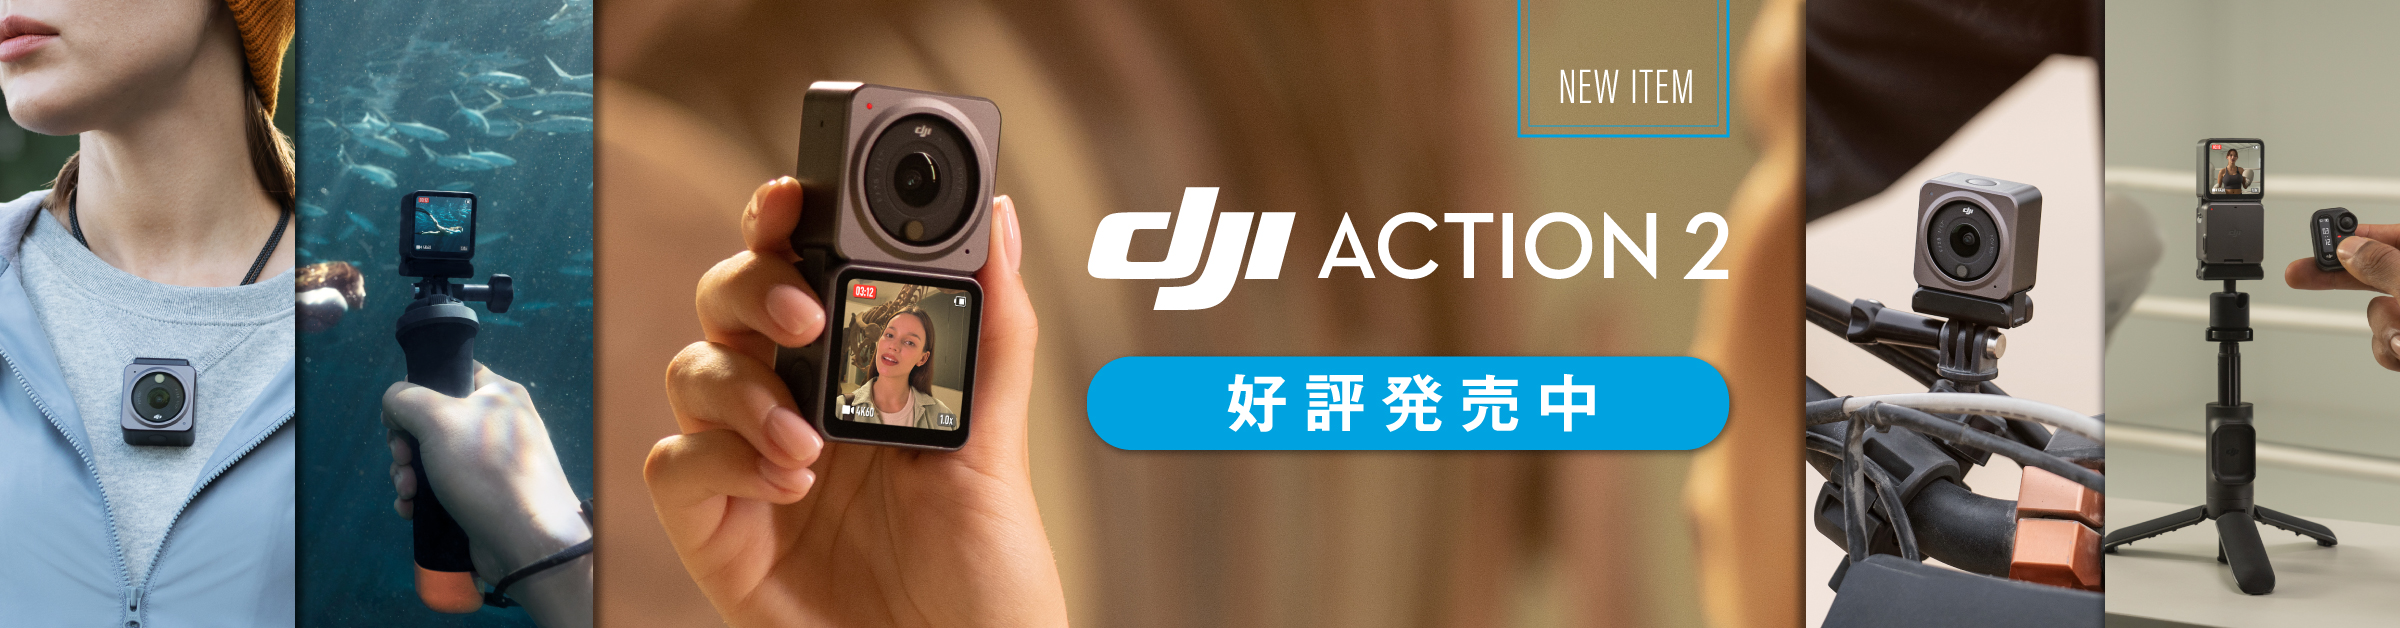 注文受付中】DJI アクションカメラ「DJI Action 2」が発表されました